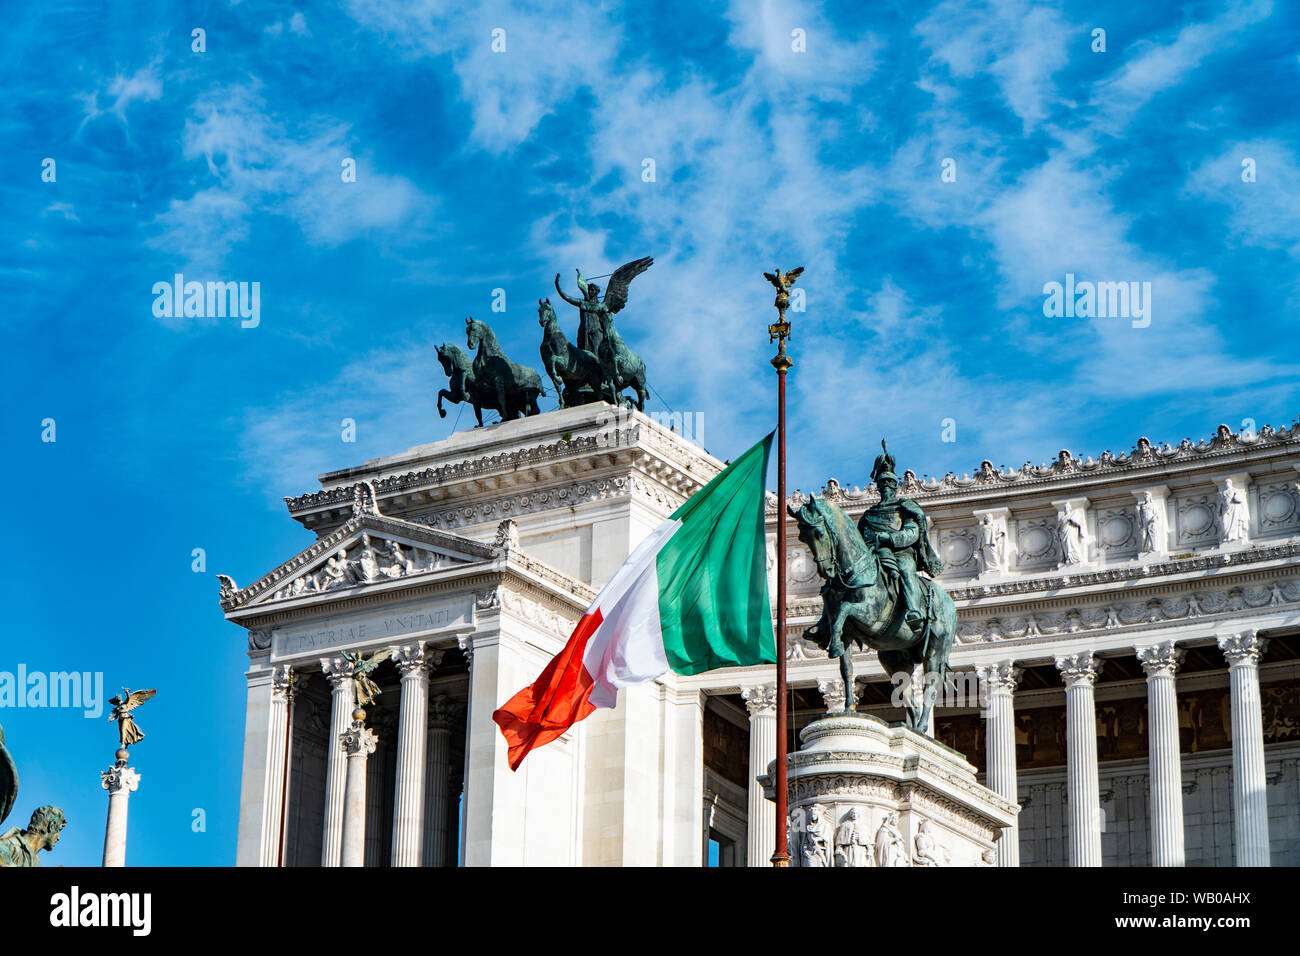 Altare della Patria with Italian flag - Rome Italy Stock Photo